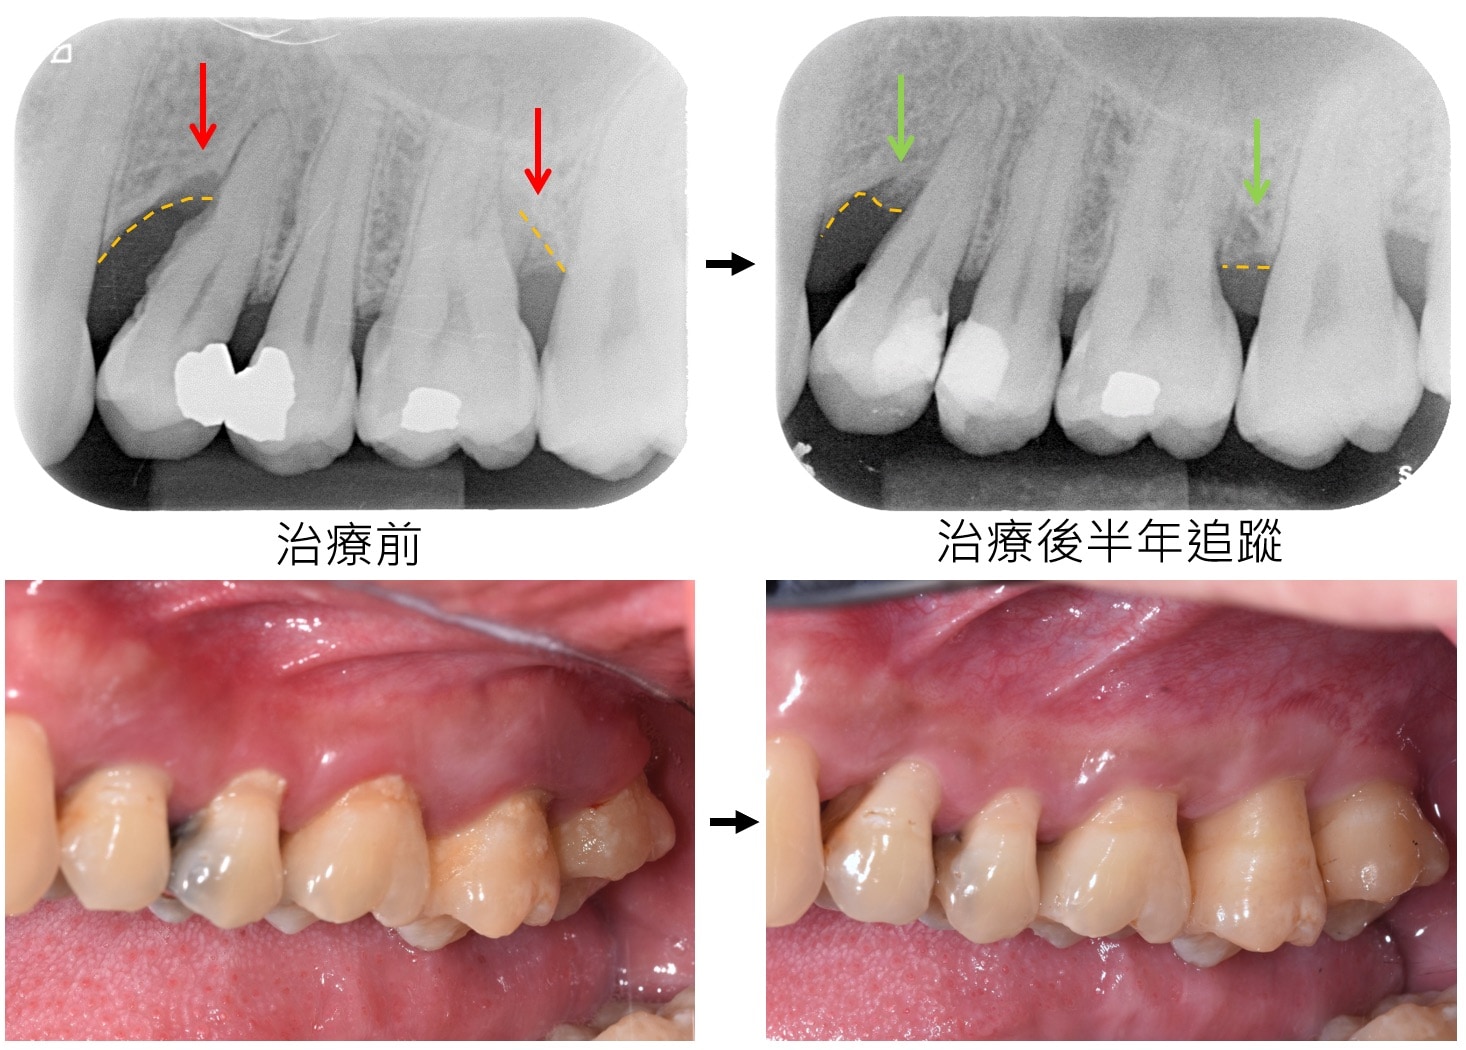 嚴重牙周病治療-雷射牙周治療-案例3-手術前後對比-李晉成醫師-台中